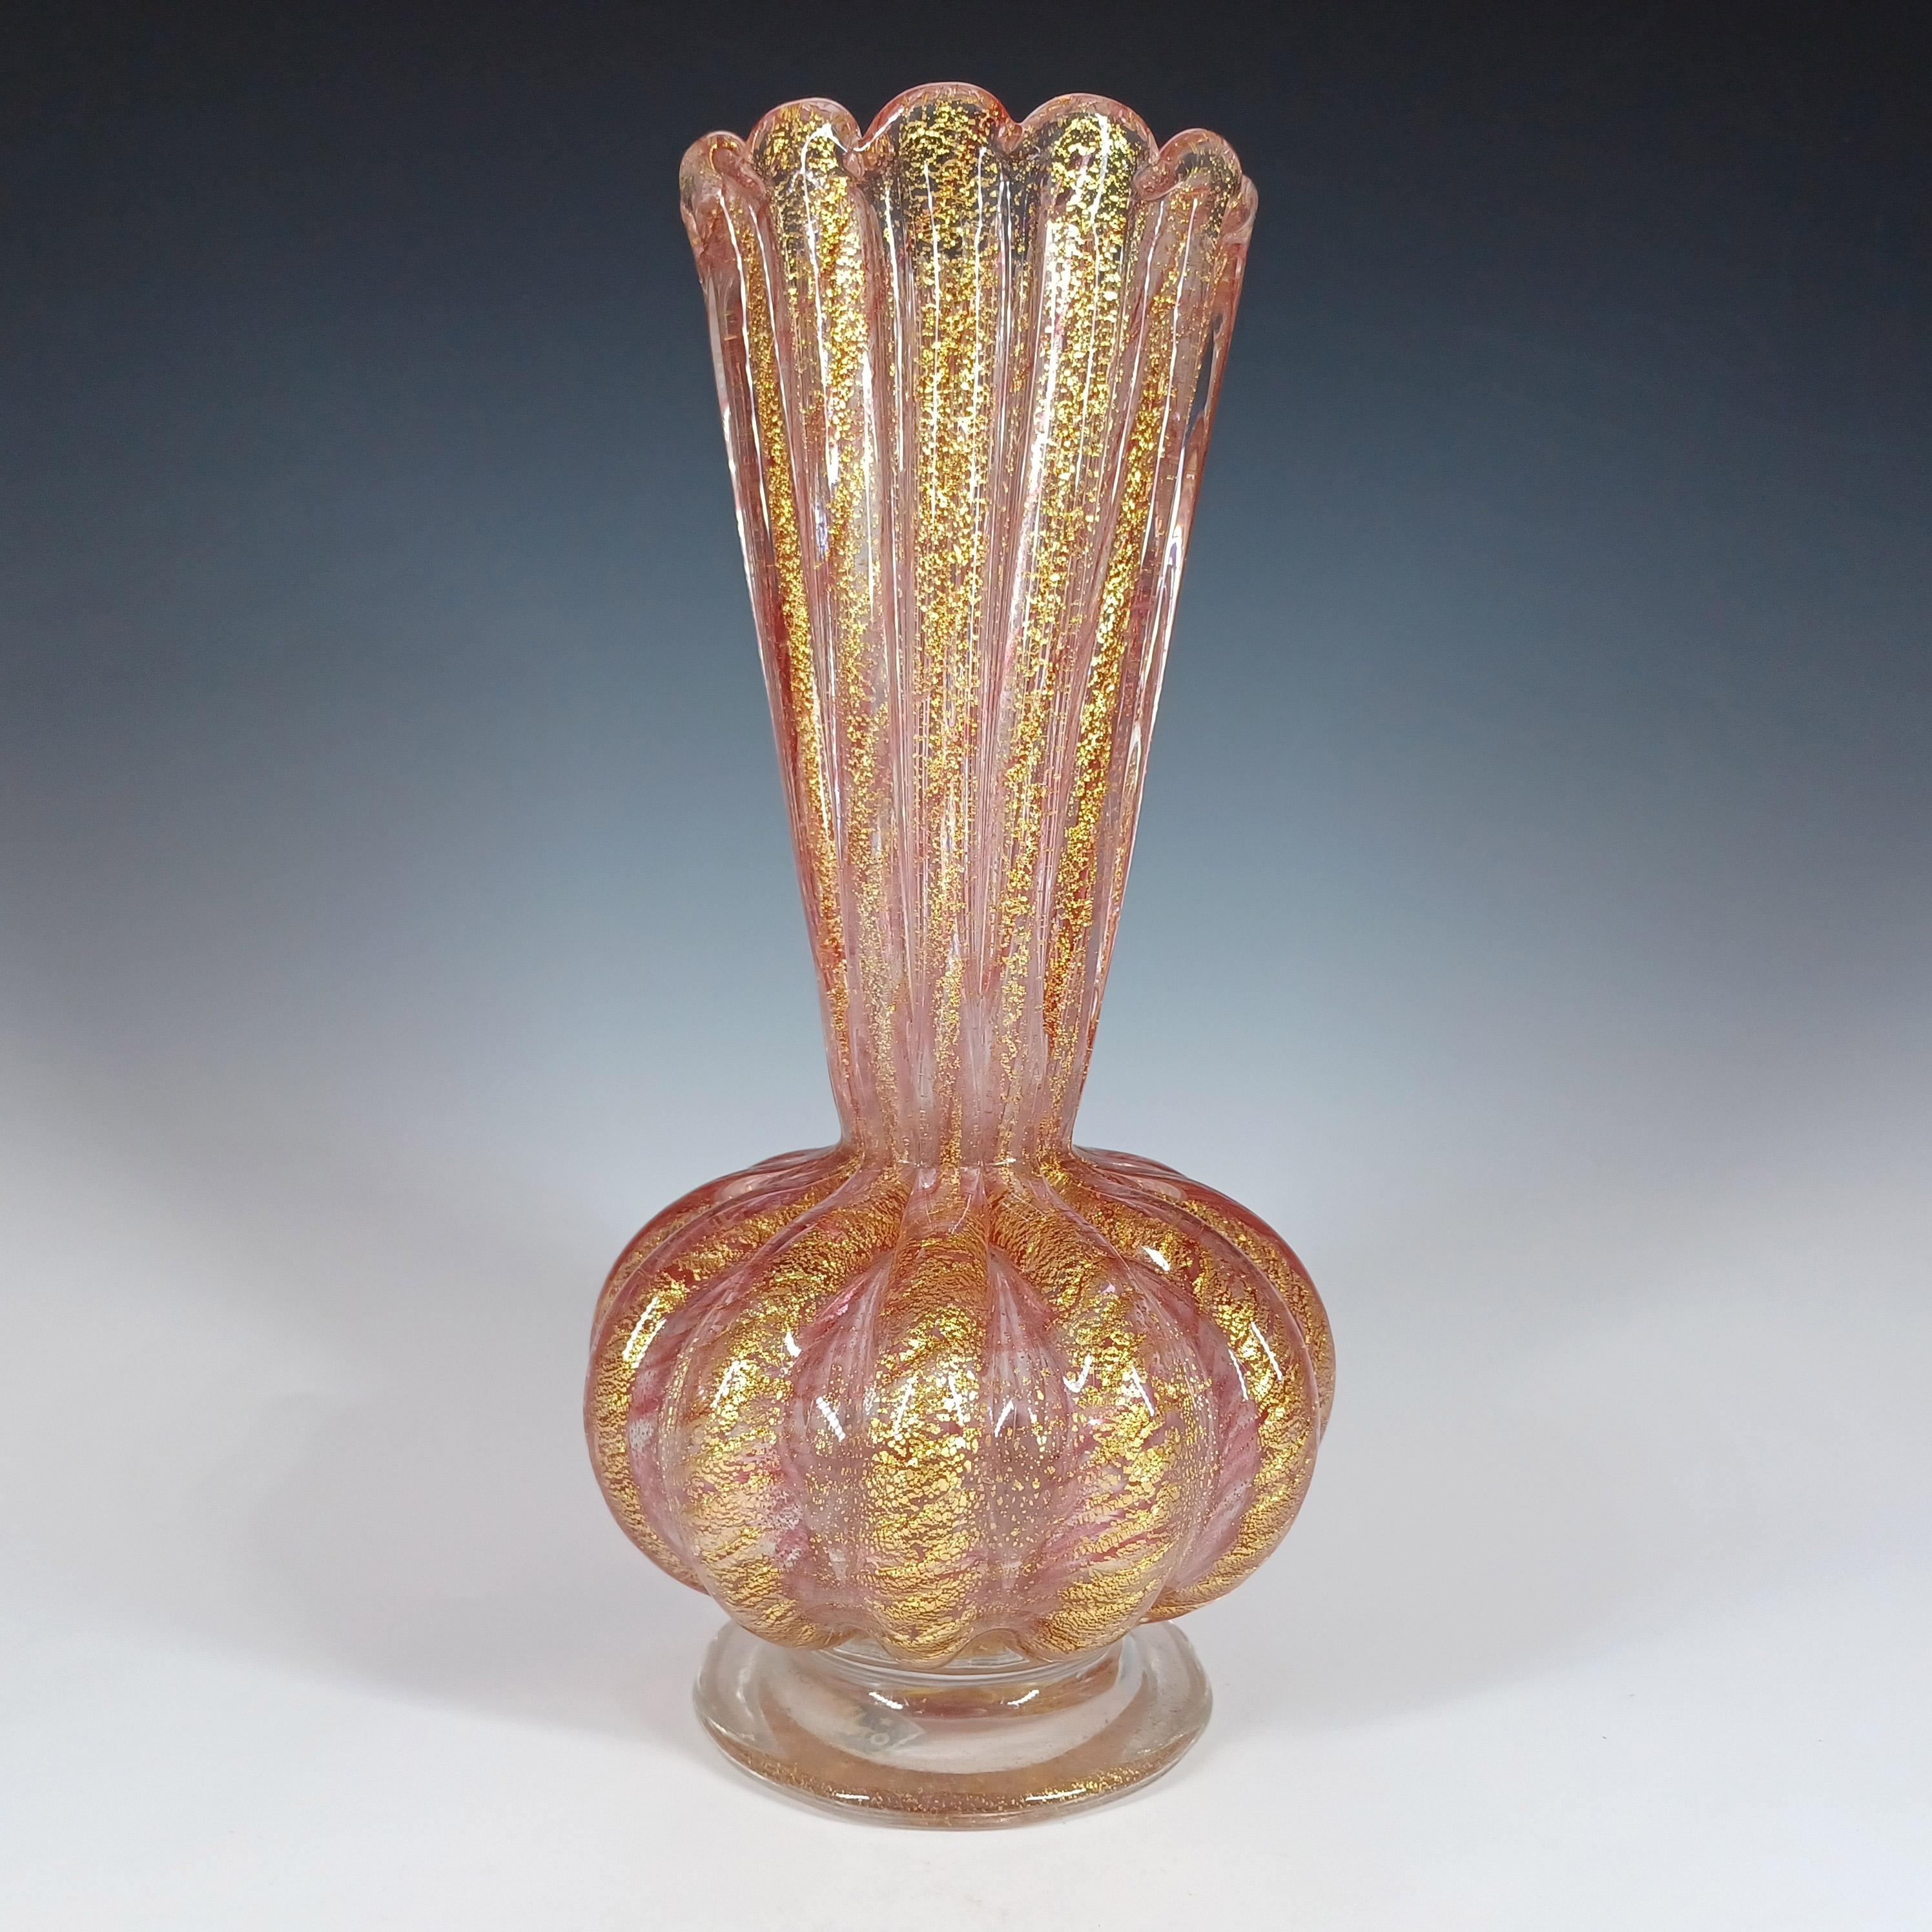 Voici un magnifique vase en verre vénitien des années 1950/60, fabriqué sur l'île de Murano, près de Venise, en Italie. Cette pièce a été fabriquée par Barovier&Toso et fait partie de la gamme Cordonato d'Oro.

Des pièces très similaires sont